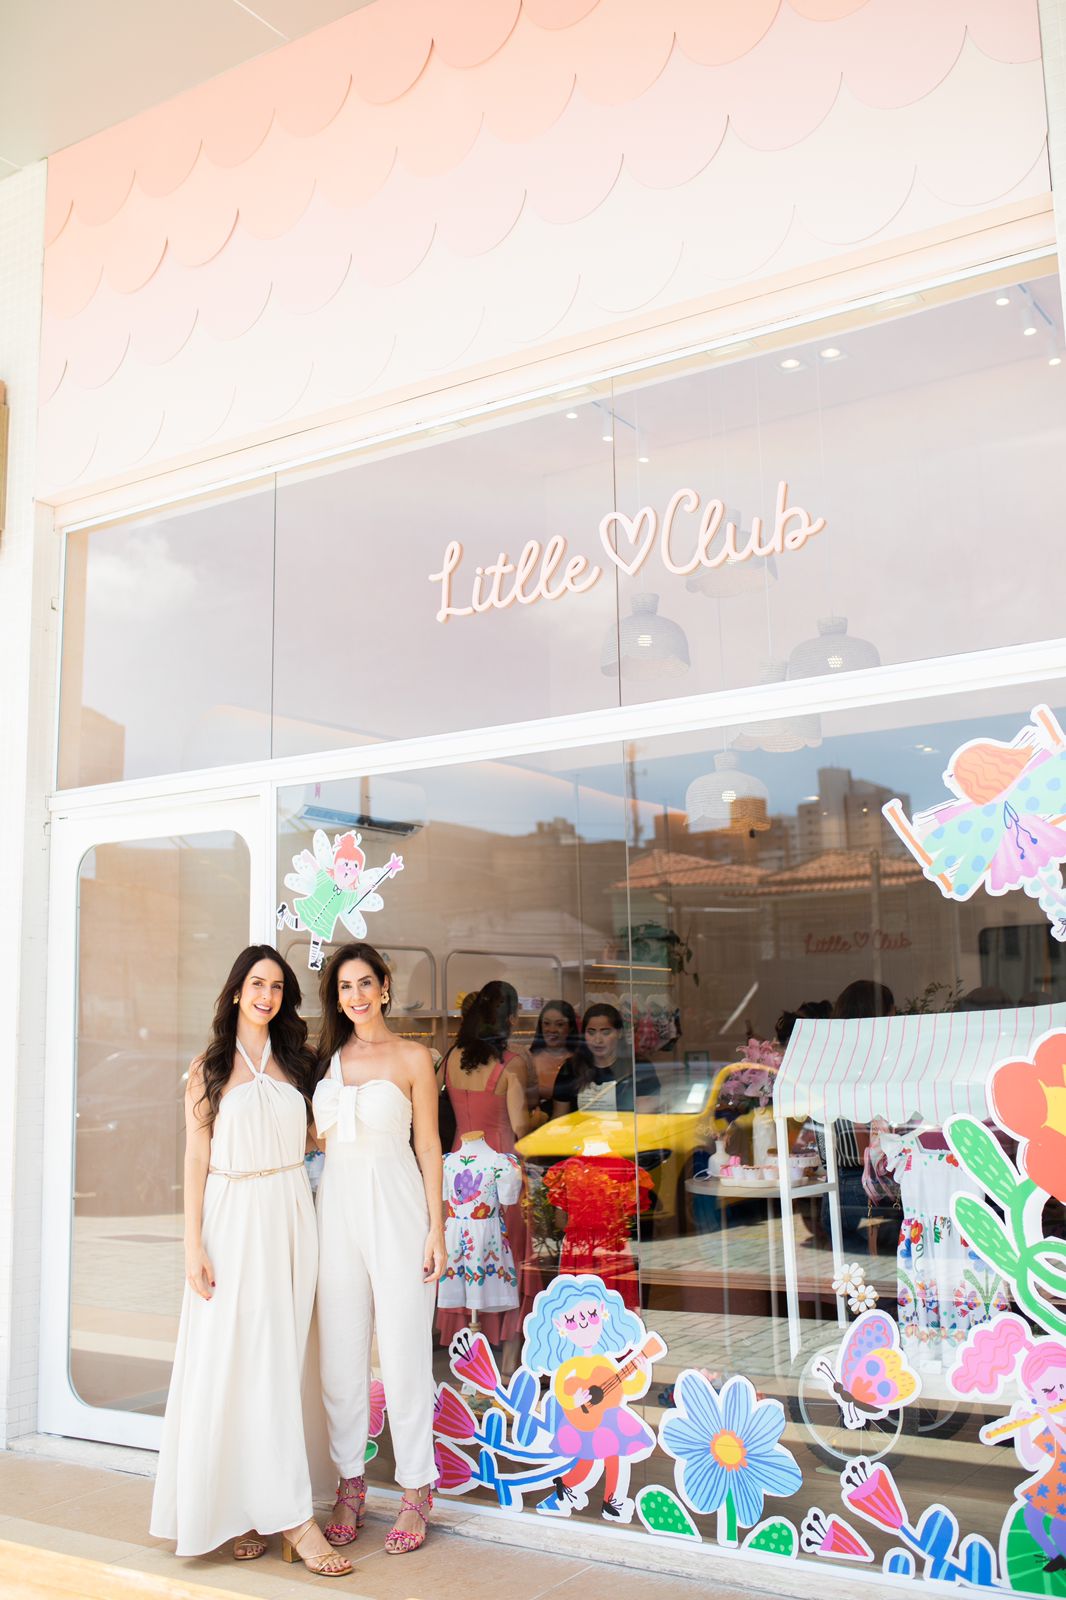 Paula Gomes e Renata Targino inauguram nova loja da Little Club